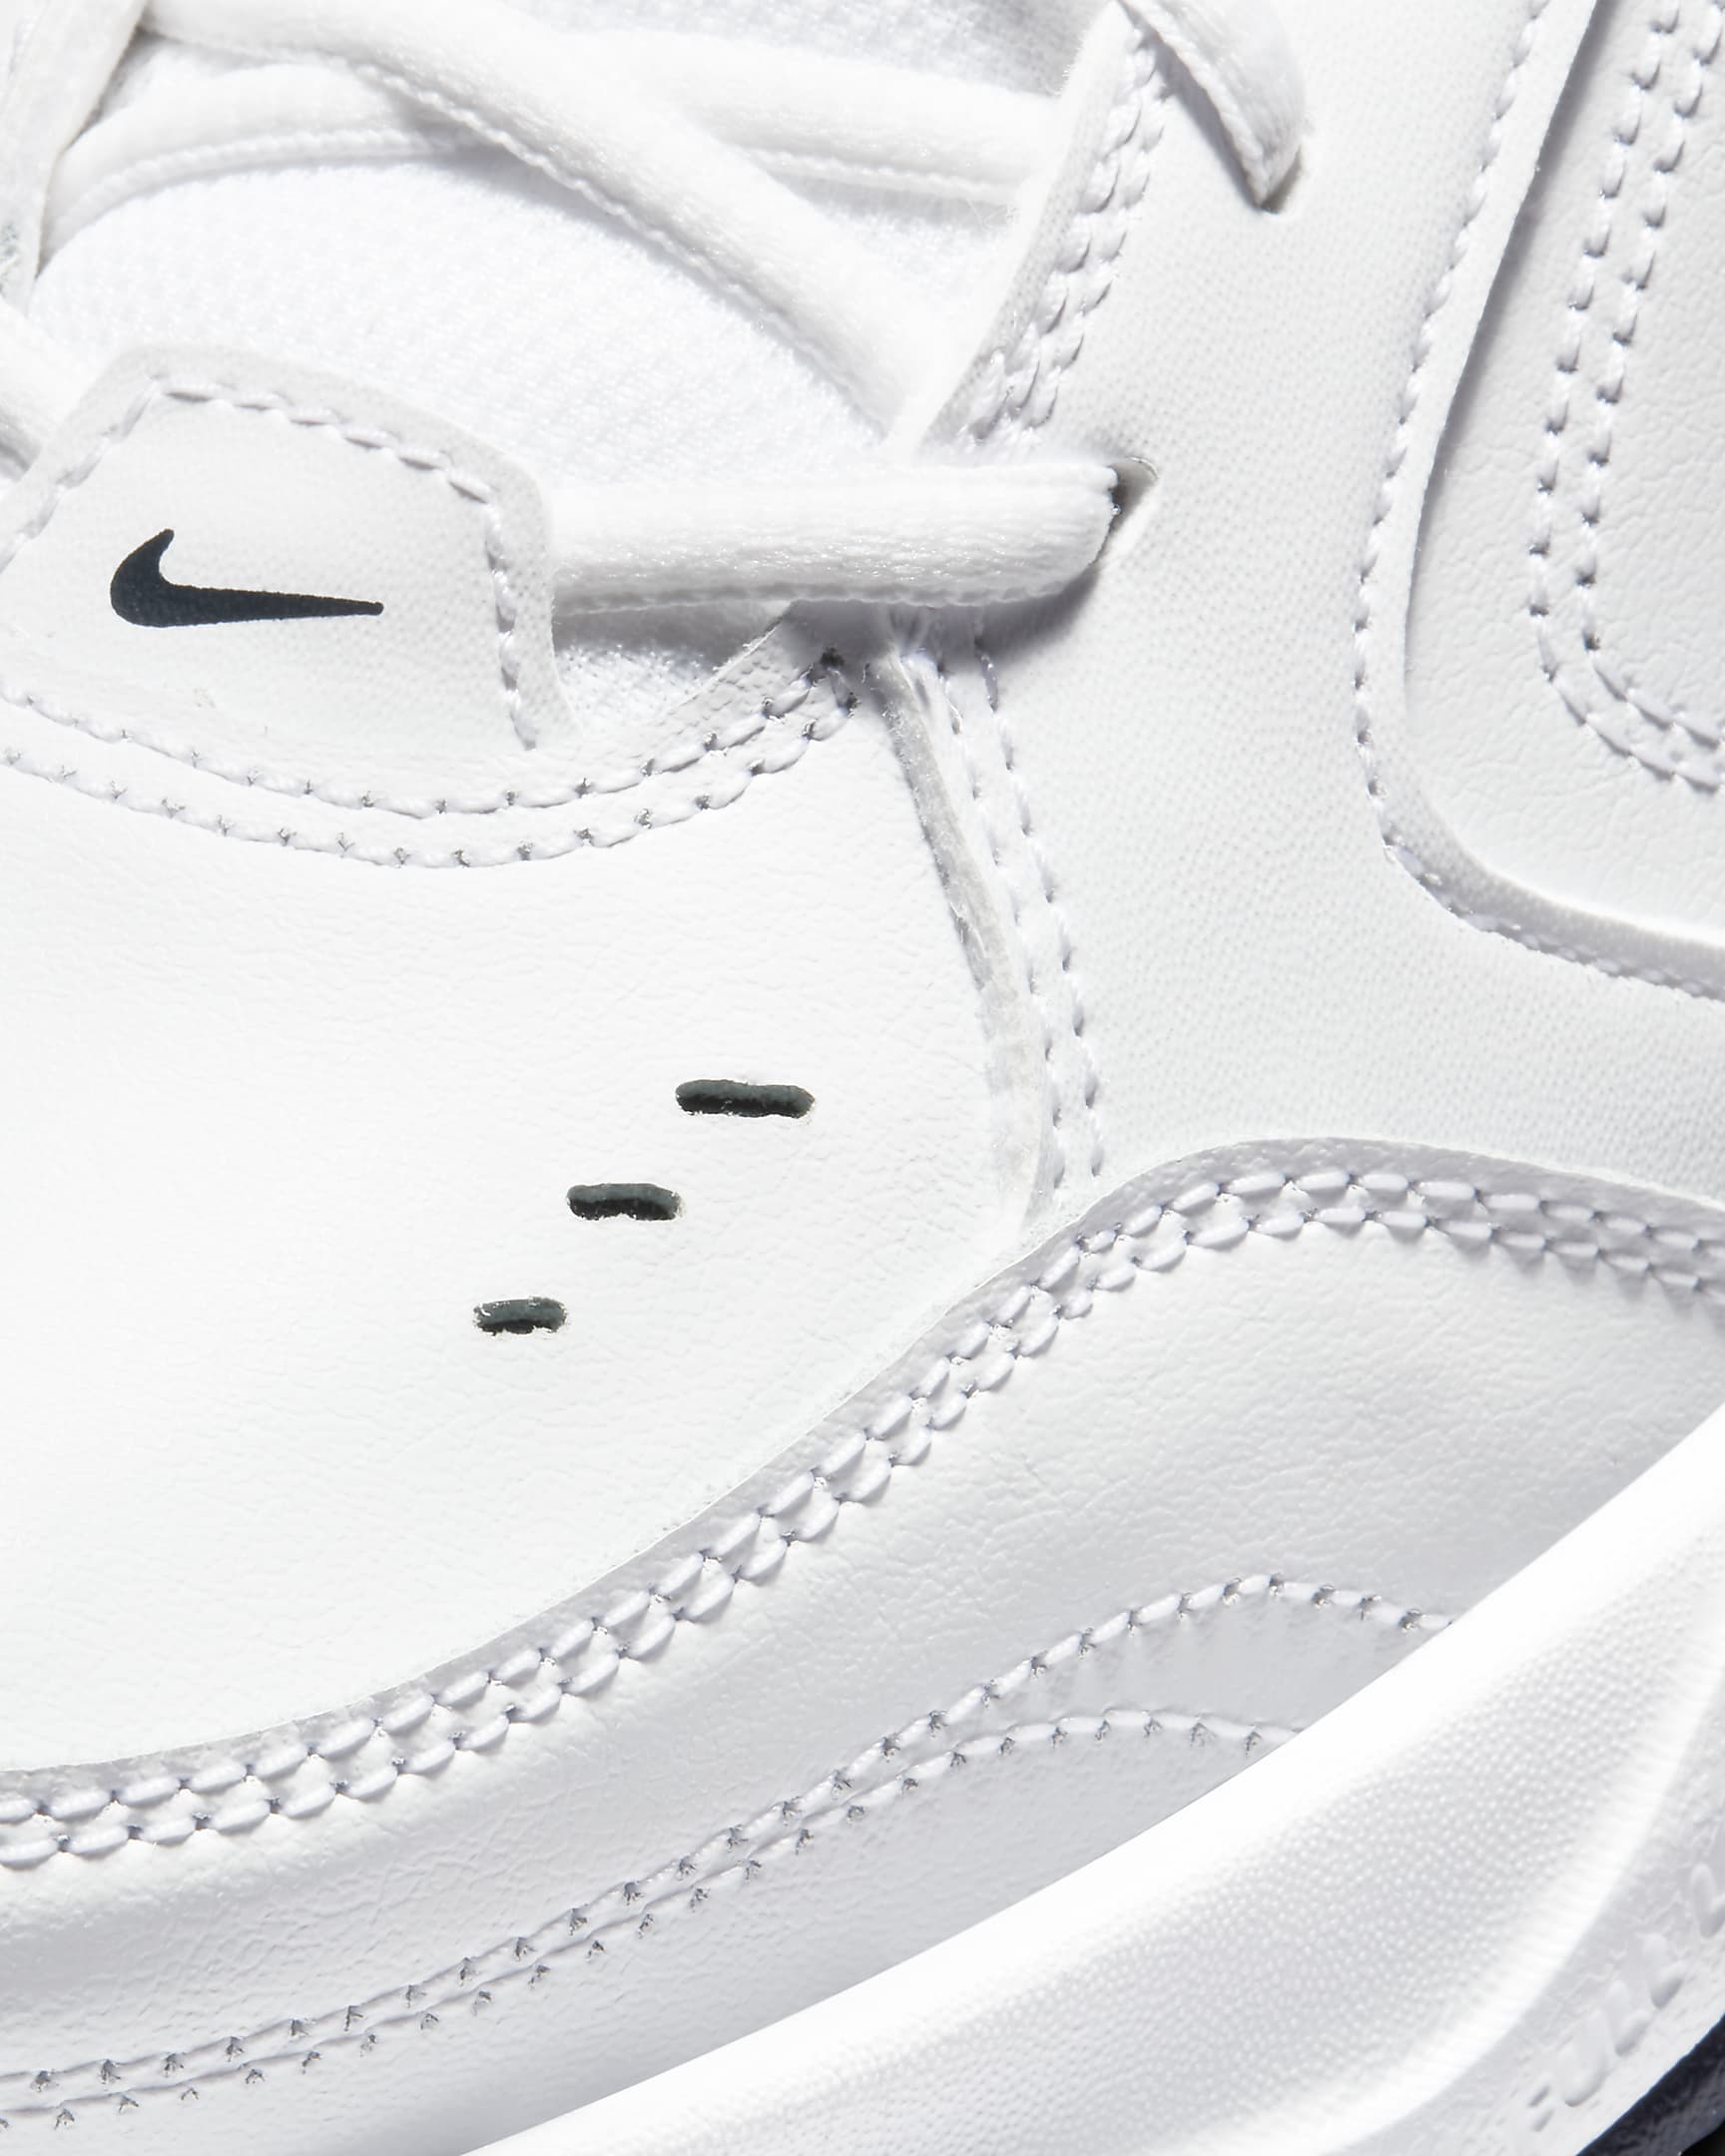 Nike Air Monarch IV Men's Workout Shoes - White/Metallic Silver